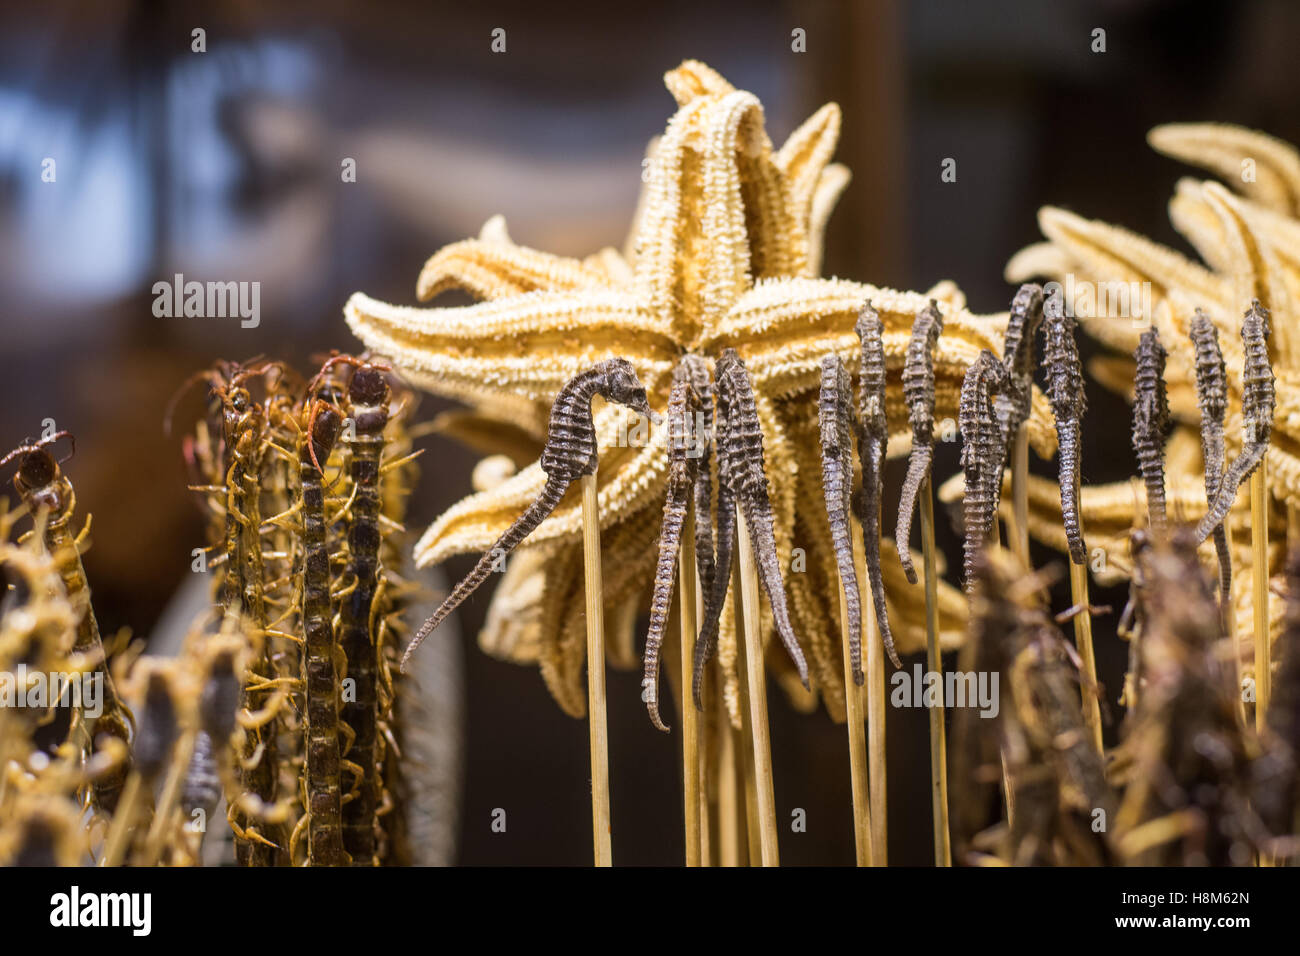 Pechino, Cina - cotte scorpioni, millepiedi, cavallucci marini e stelle marine in vendita presso la Donghuamen Snack mercato notturno, una unità organizzativa di grandi dimensioni Foto Stock